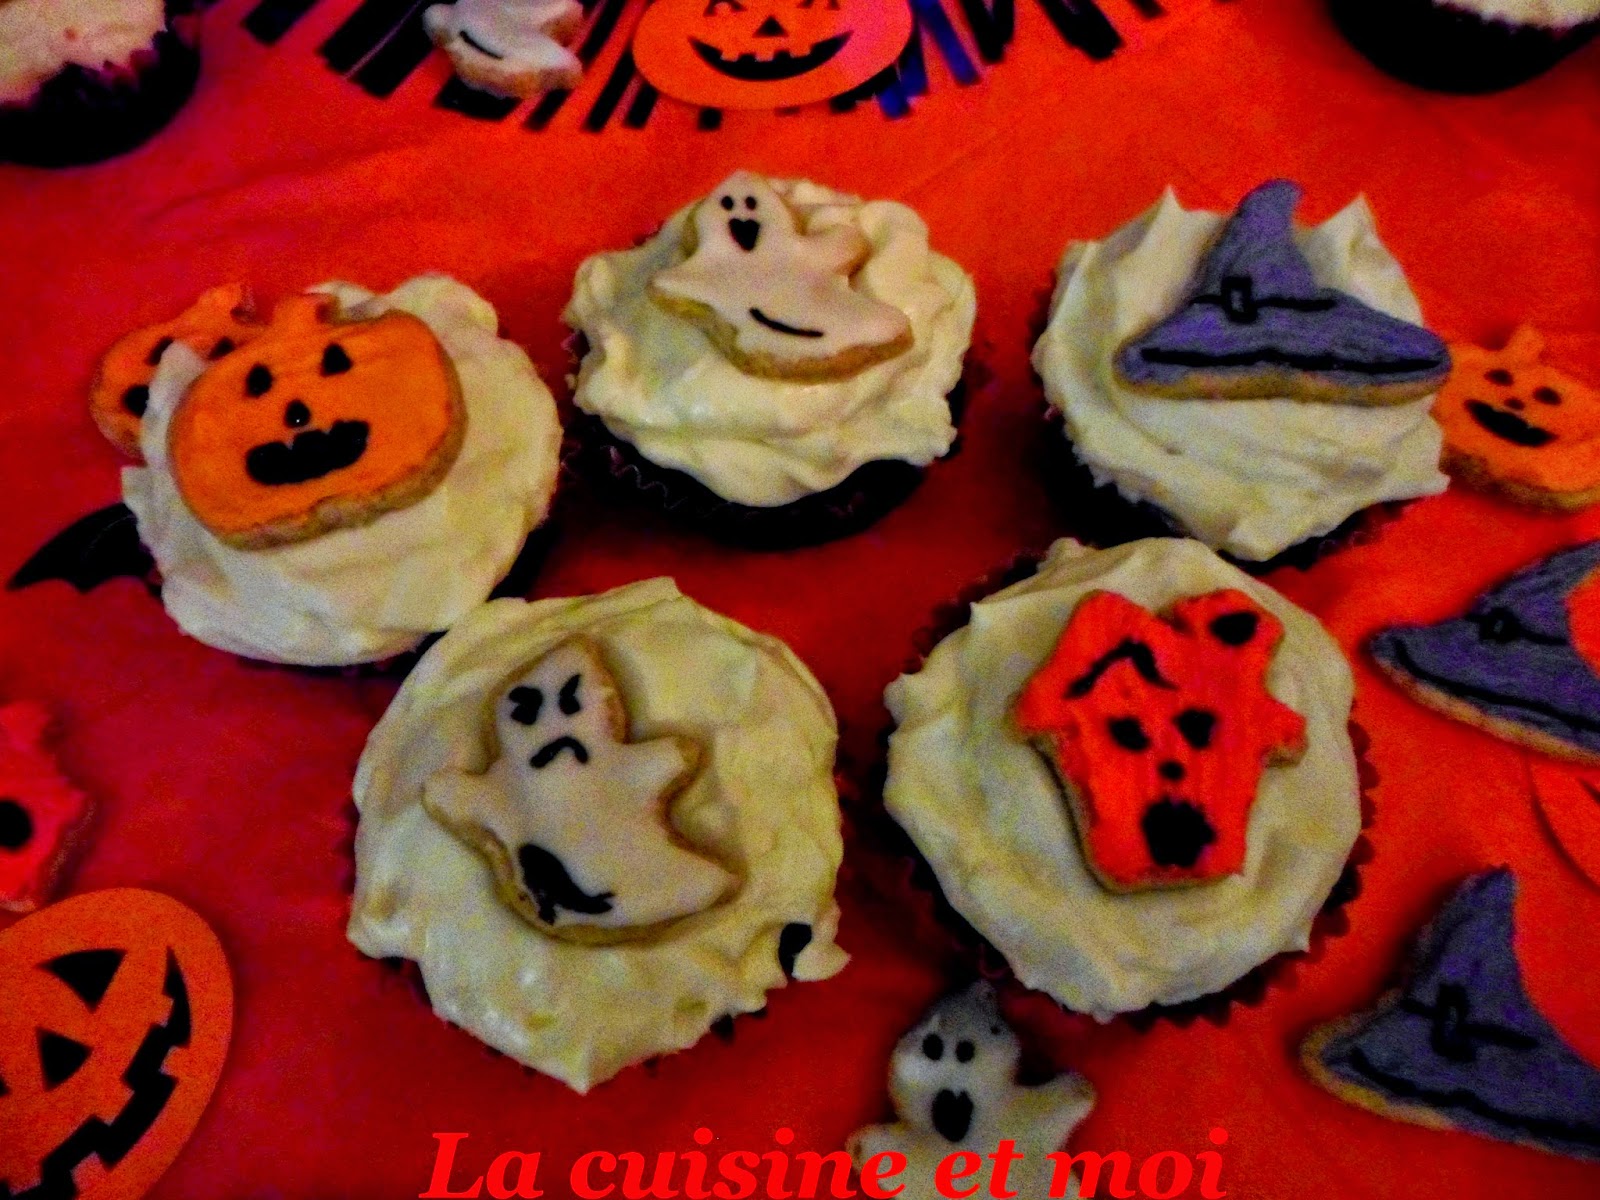 http://la-cuisine-et-moi.blogspot.fr/2014/10/cupcakes-et-sables-dhalloween.html